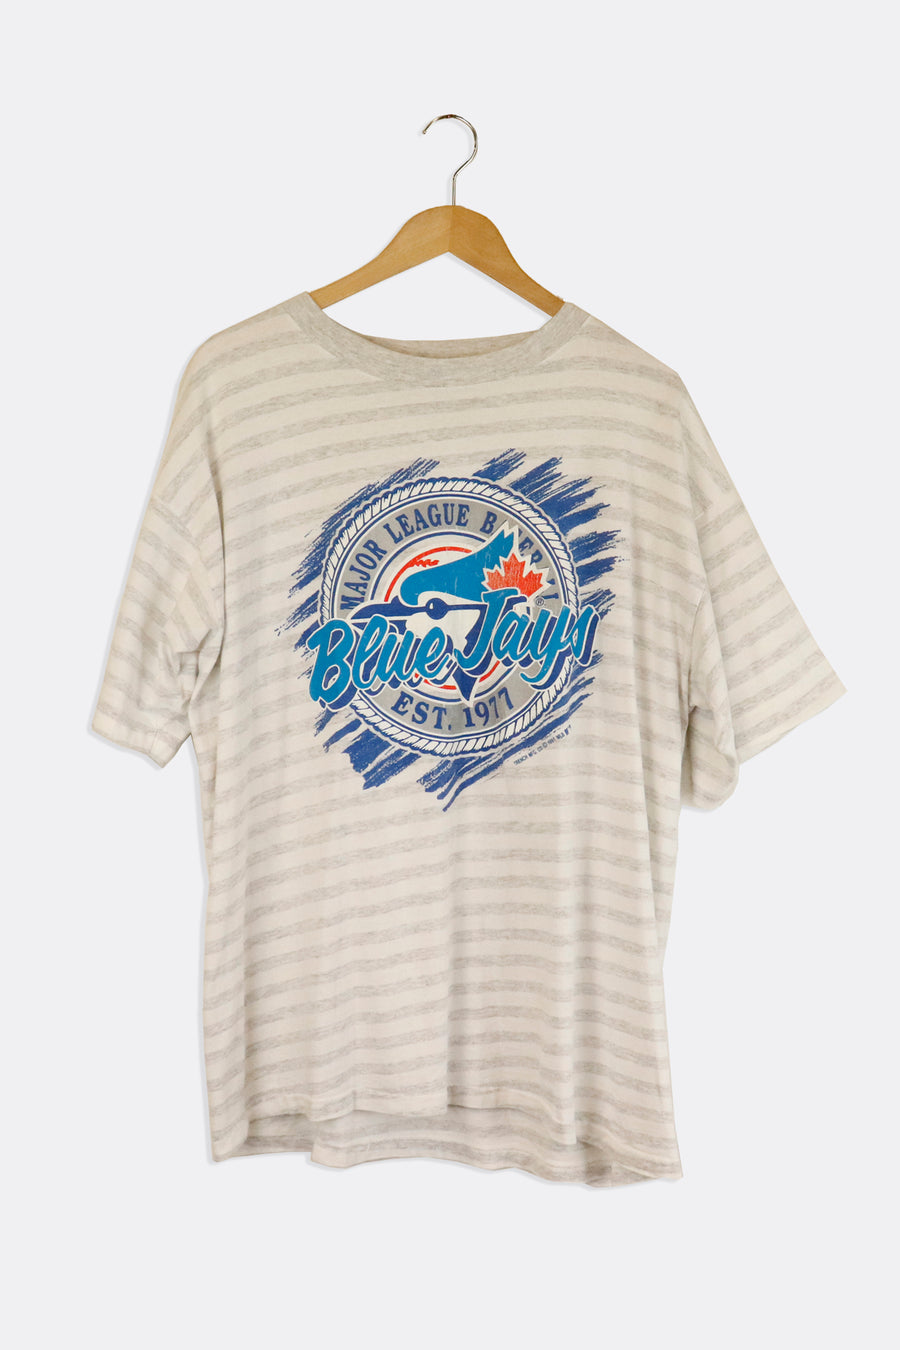 Vintage 1991 Toronto Blue Jays Stripes And Mlb Logo Vinyl T Shirt Sz XL